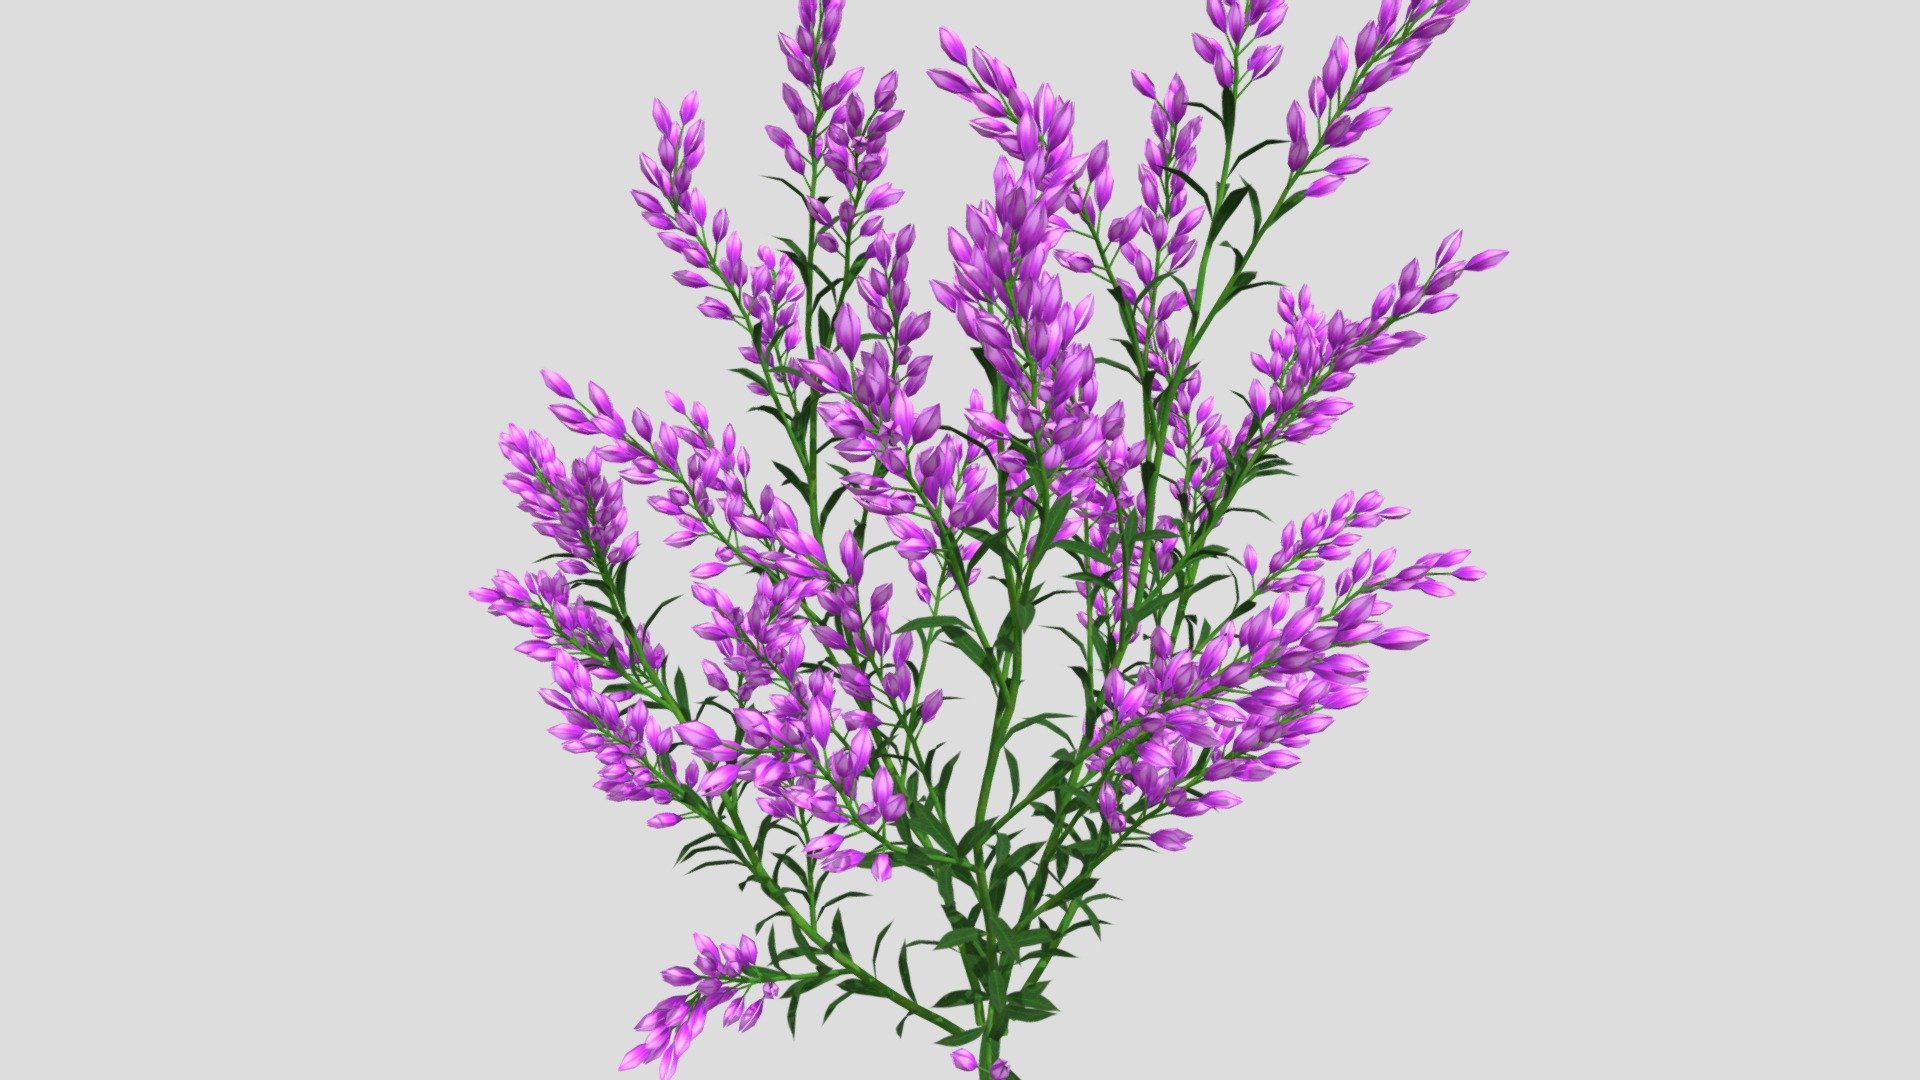 Lavender Flower 3d model, File formats in the attached folder: 3ds, c4d, obj, stl 3d model